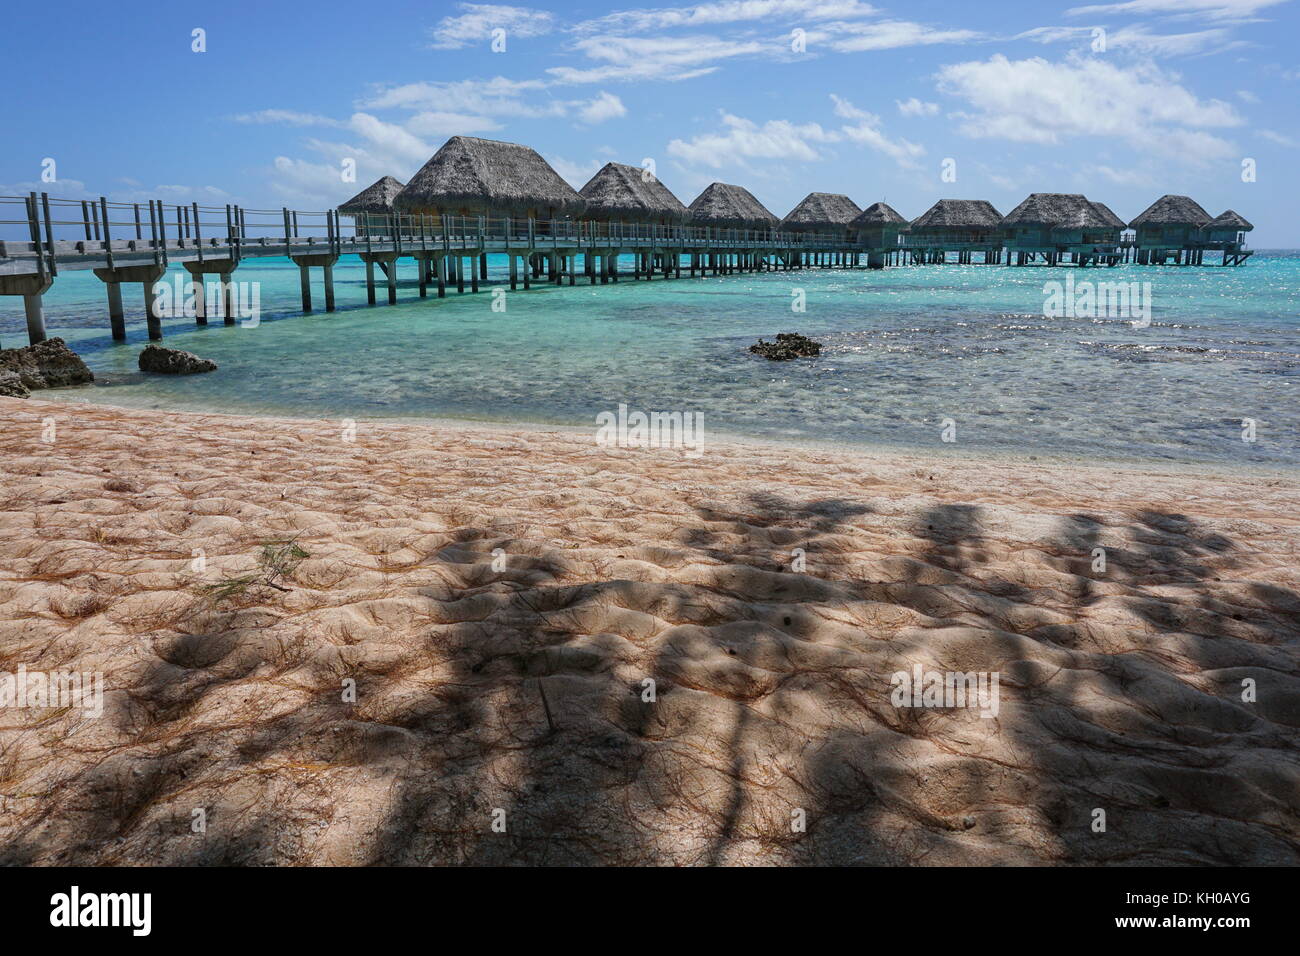 Tropische Lagune mit Überwasser Bungalows Resort von einem Sandstrand mit Schatten von Bäumen, Tikehau, tuamotus, Französisch Polynesien, Pazifik Stockfoto